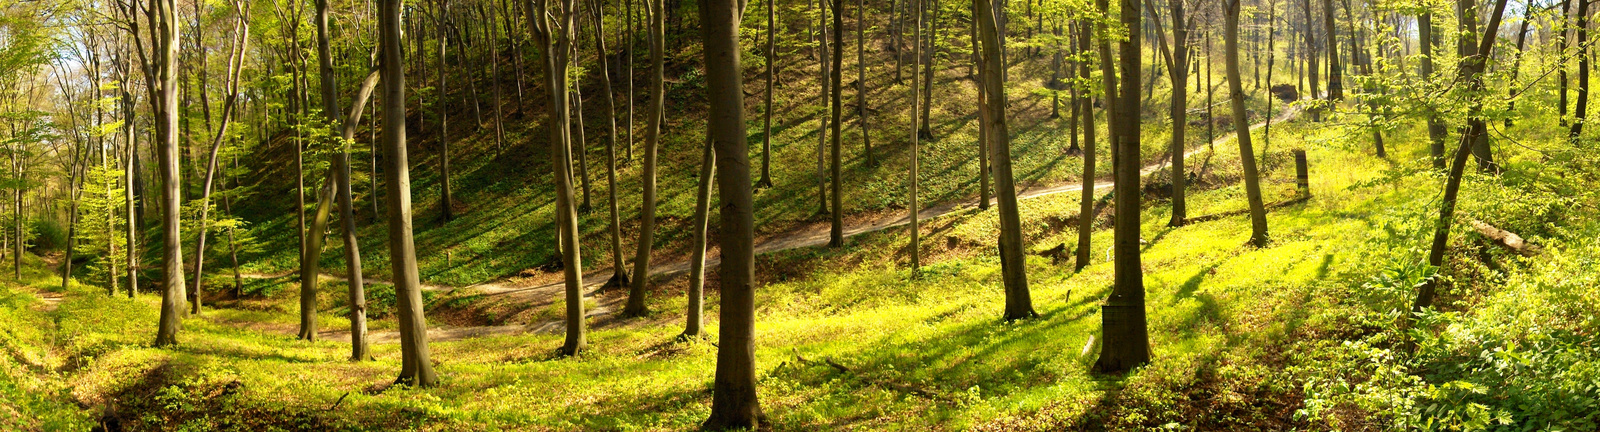 Budaörsi erdő